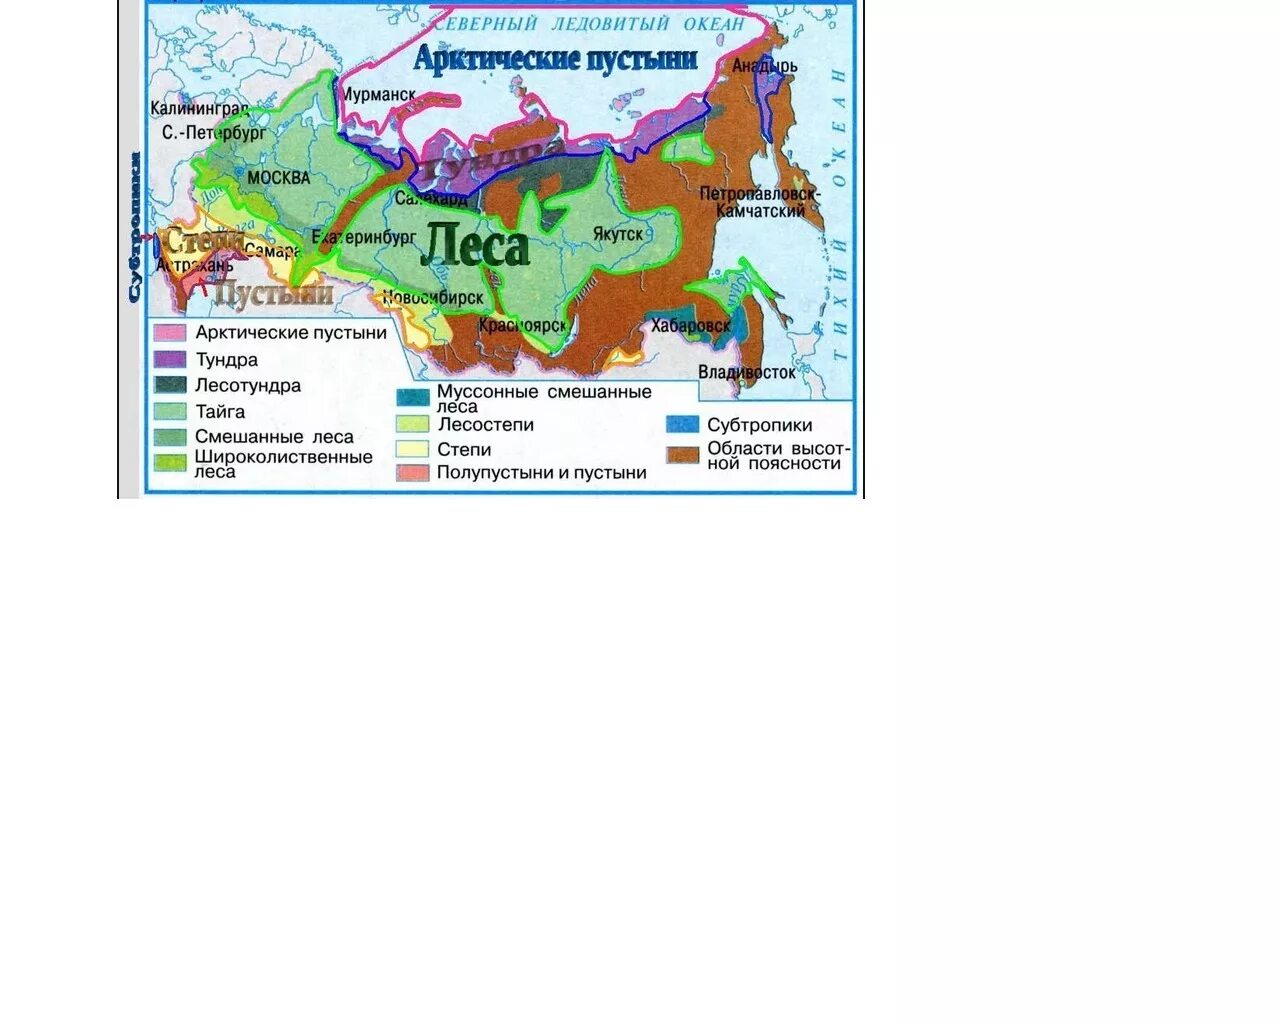 Карта природных зон тундра тайга. Карта природных зон России субтропики. Карта природных зон России субтропические леса. Карта природных зон России 4 класс субтропики. Природные зоны России 4 класс окружающий субтропическая зона.